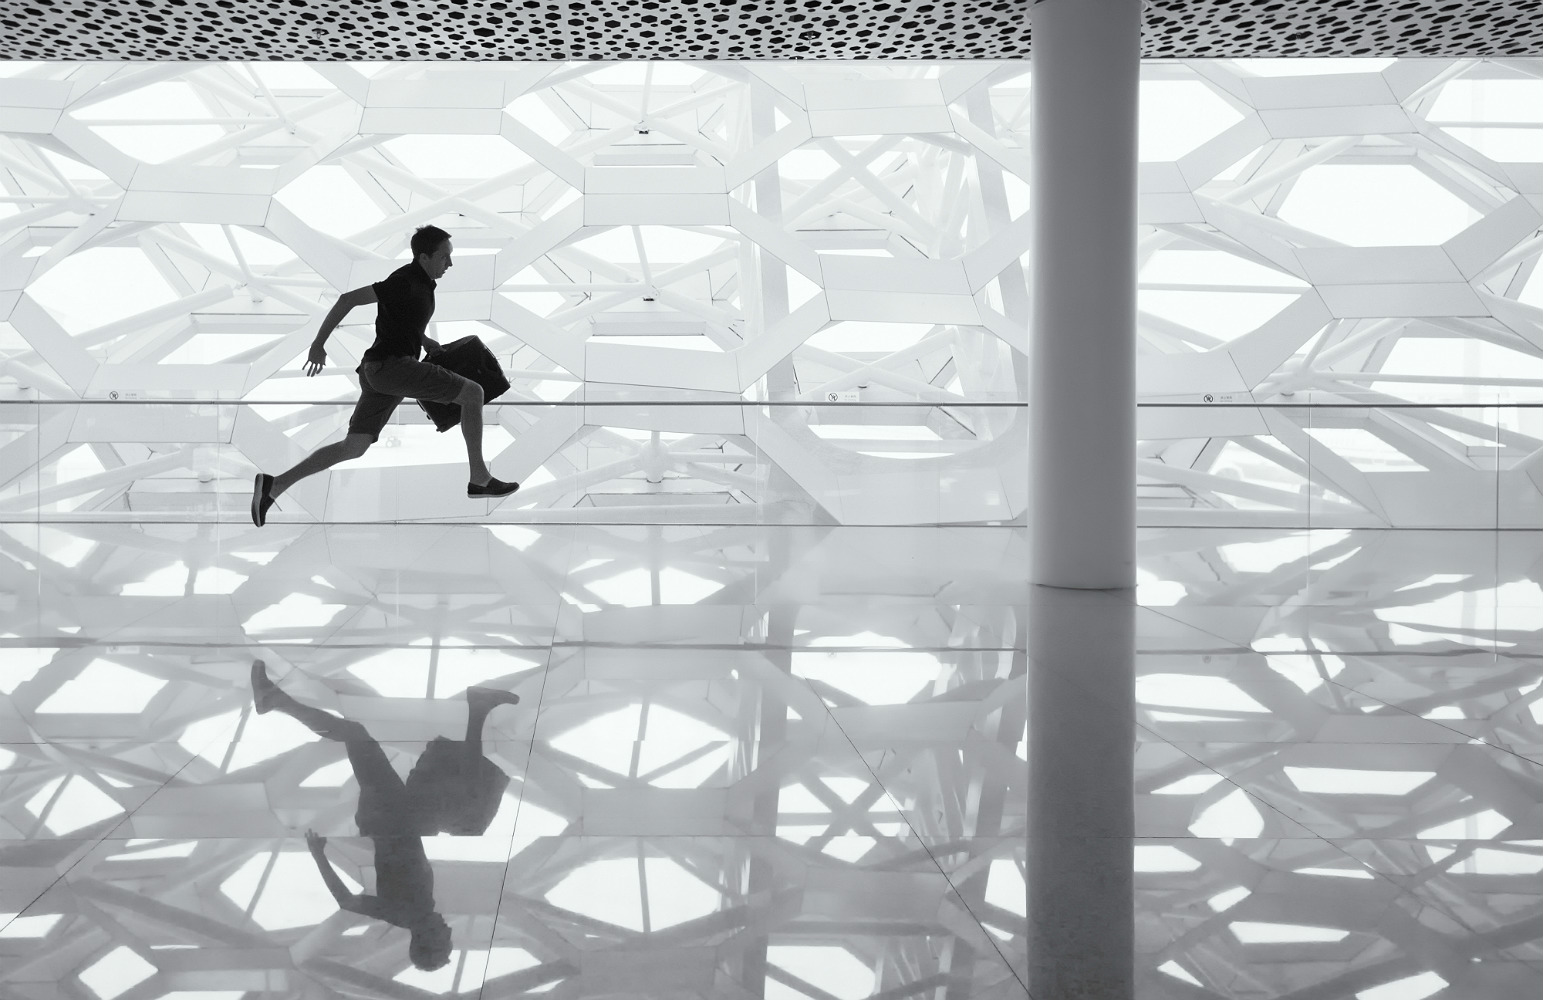 Imagem em preto e branco de um homem saltando apressado em um saguão. O homem porta uma mala e o chão lustrado reflete seu salto.